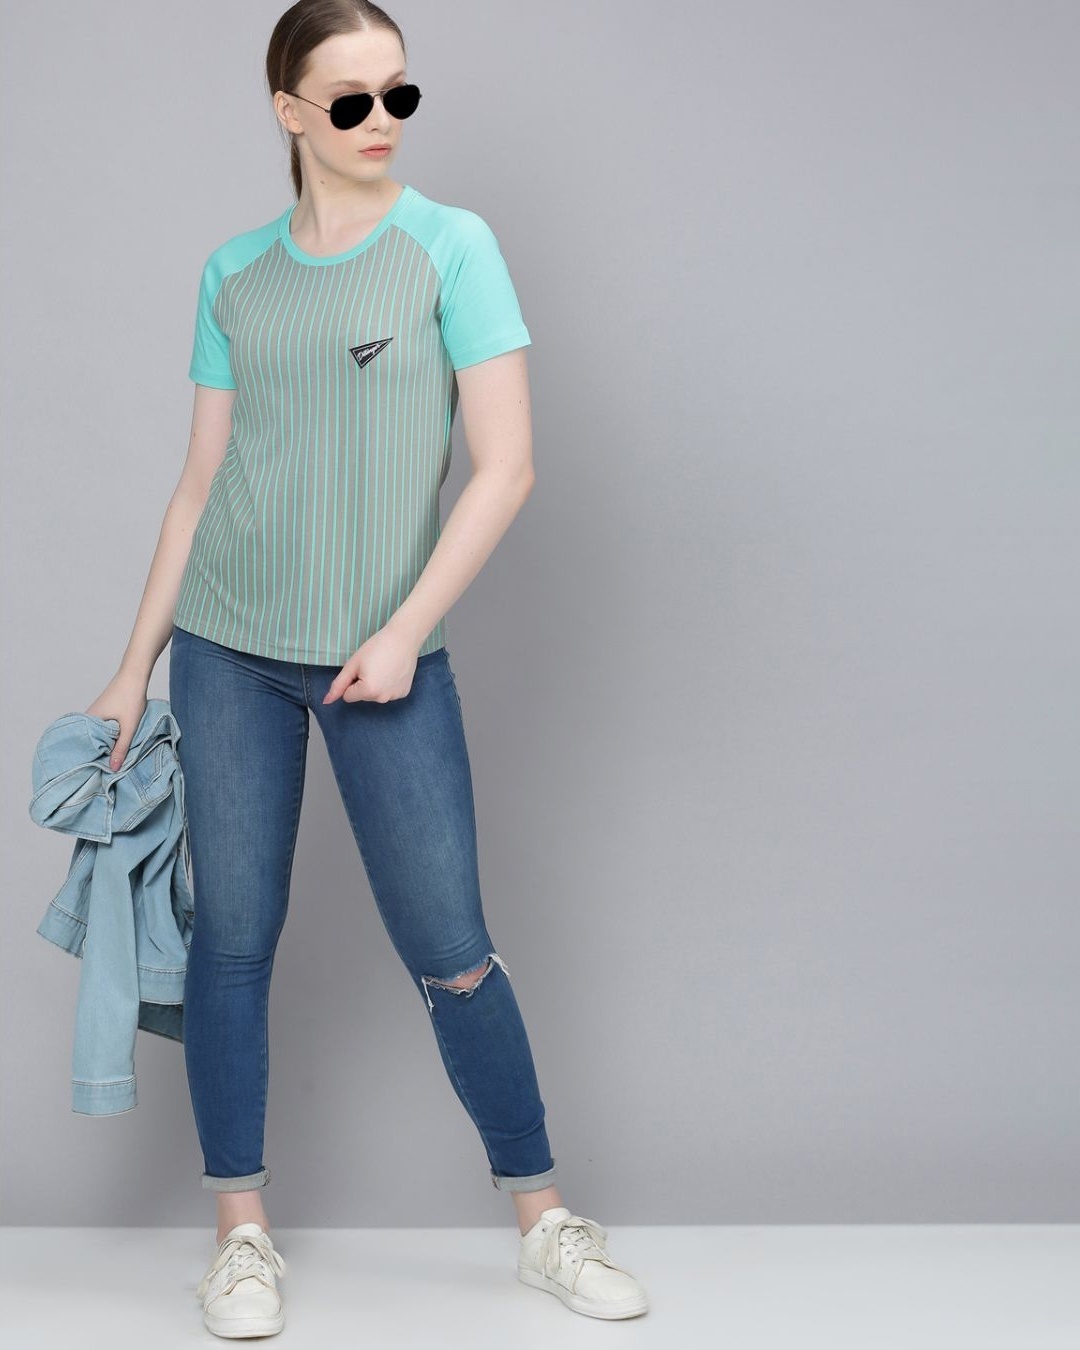 Shop Women's Grey Striped T-shirt